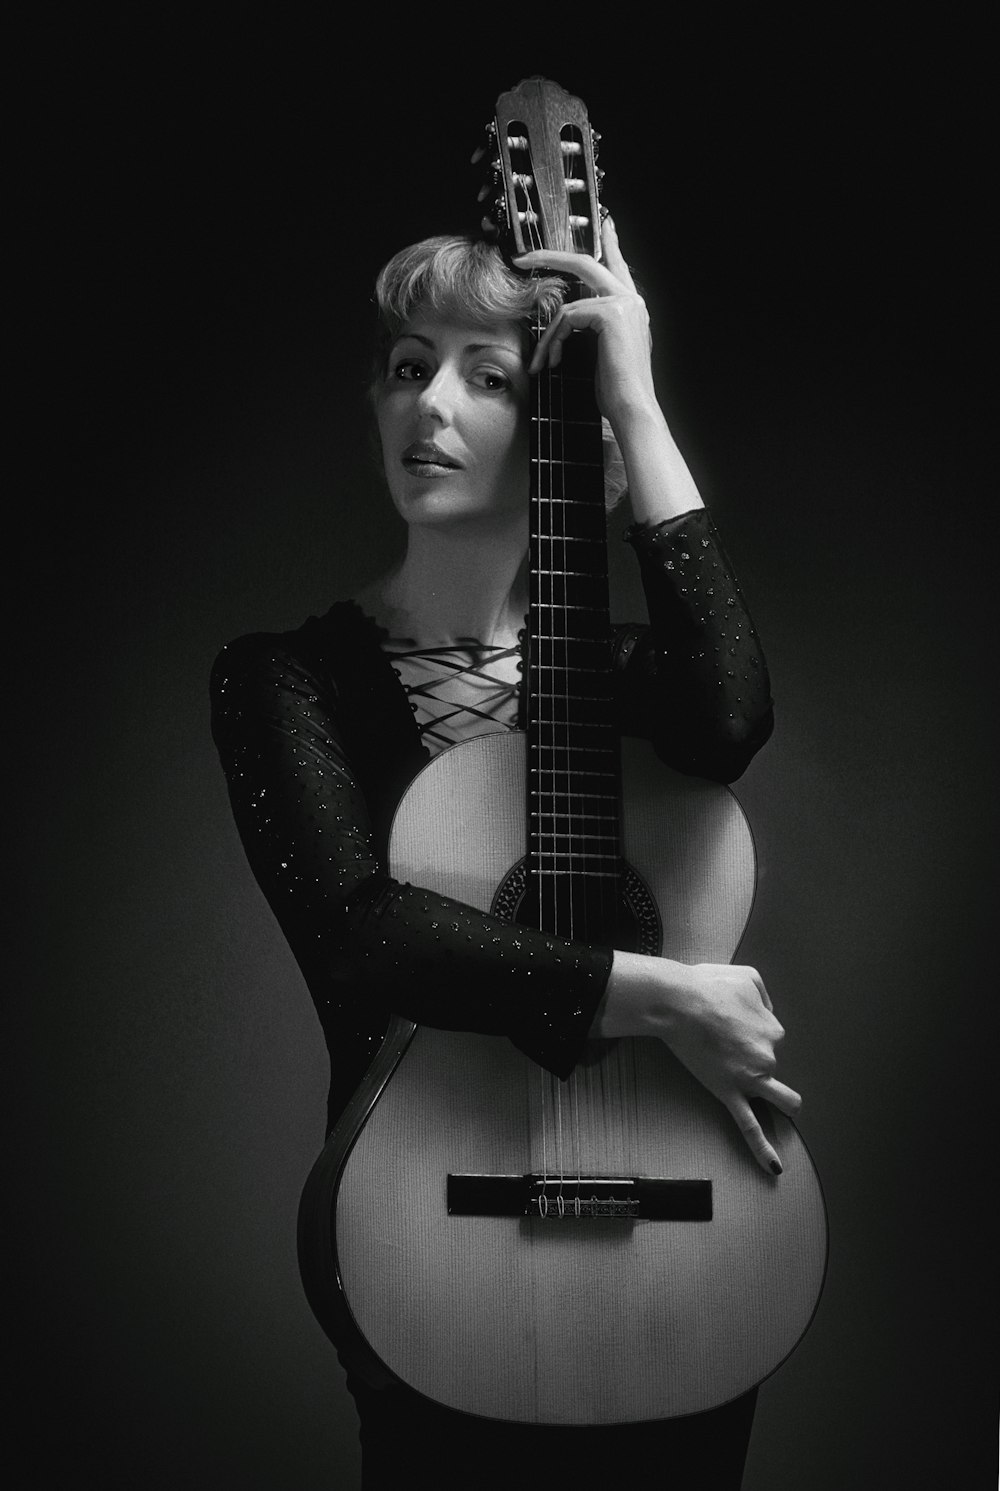 기타를 들고 있는 여자의 회색조 사진